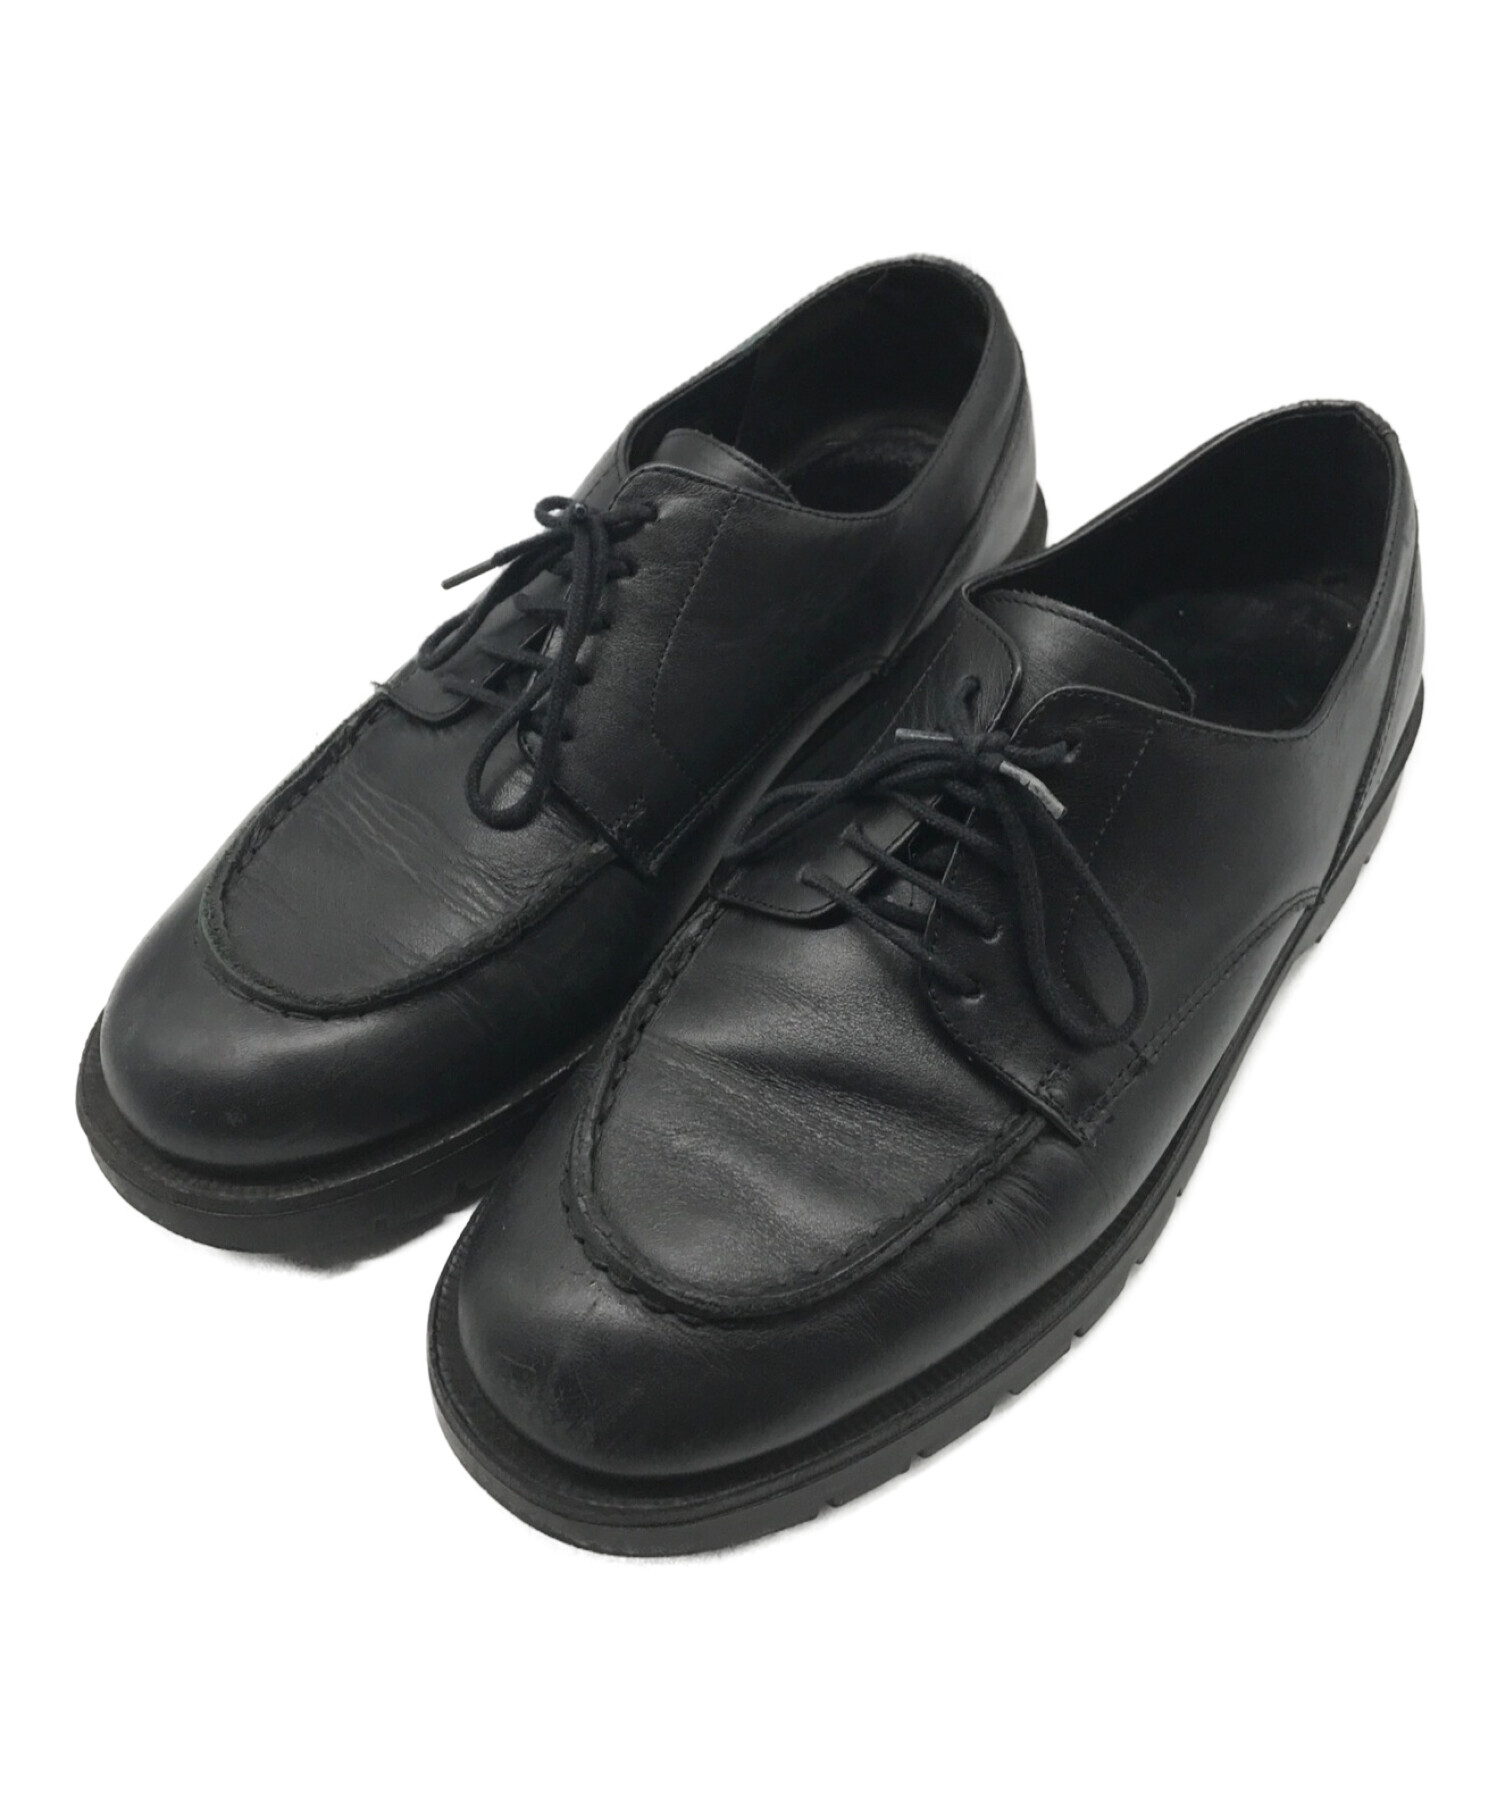 KLEMAN FRODA 黒 サイズ42 - 靴